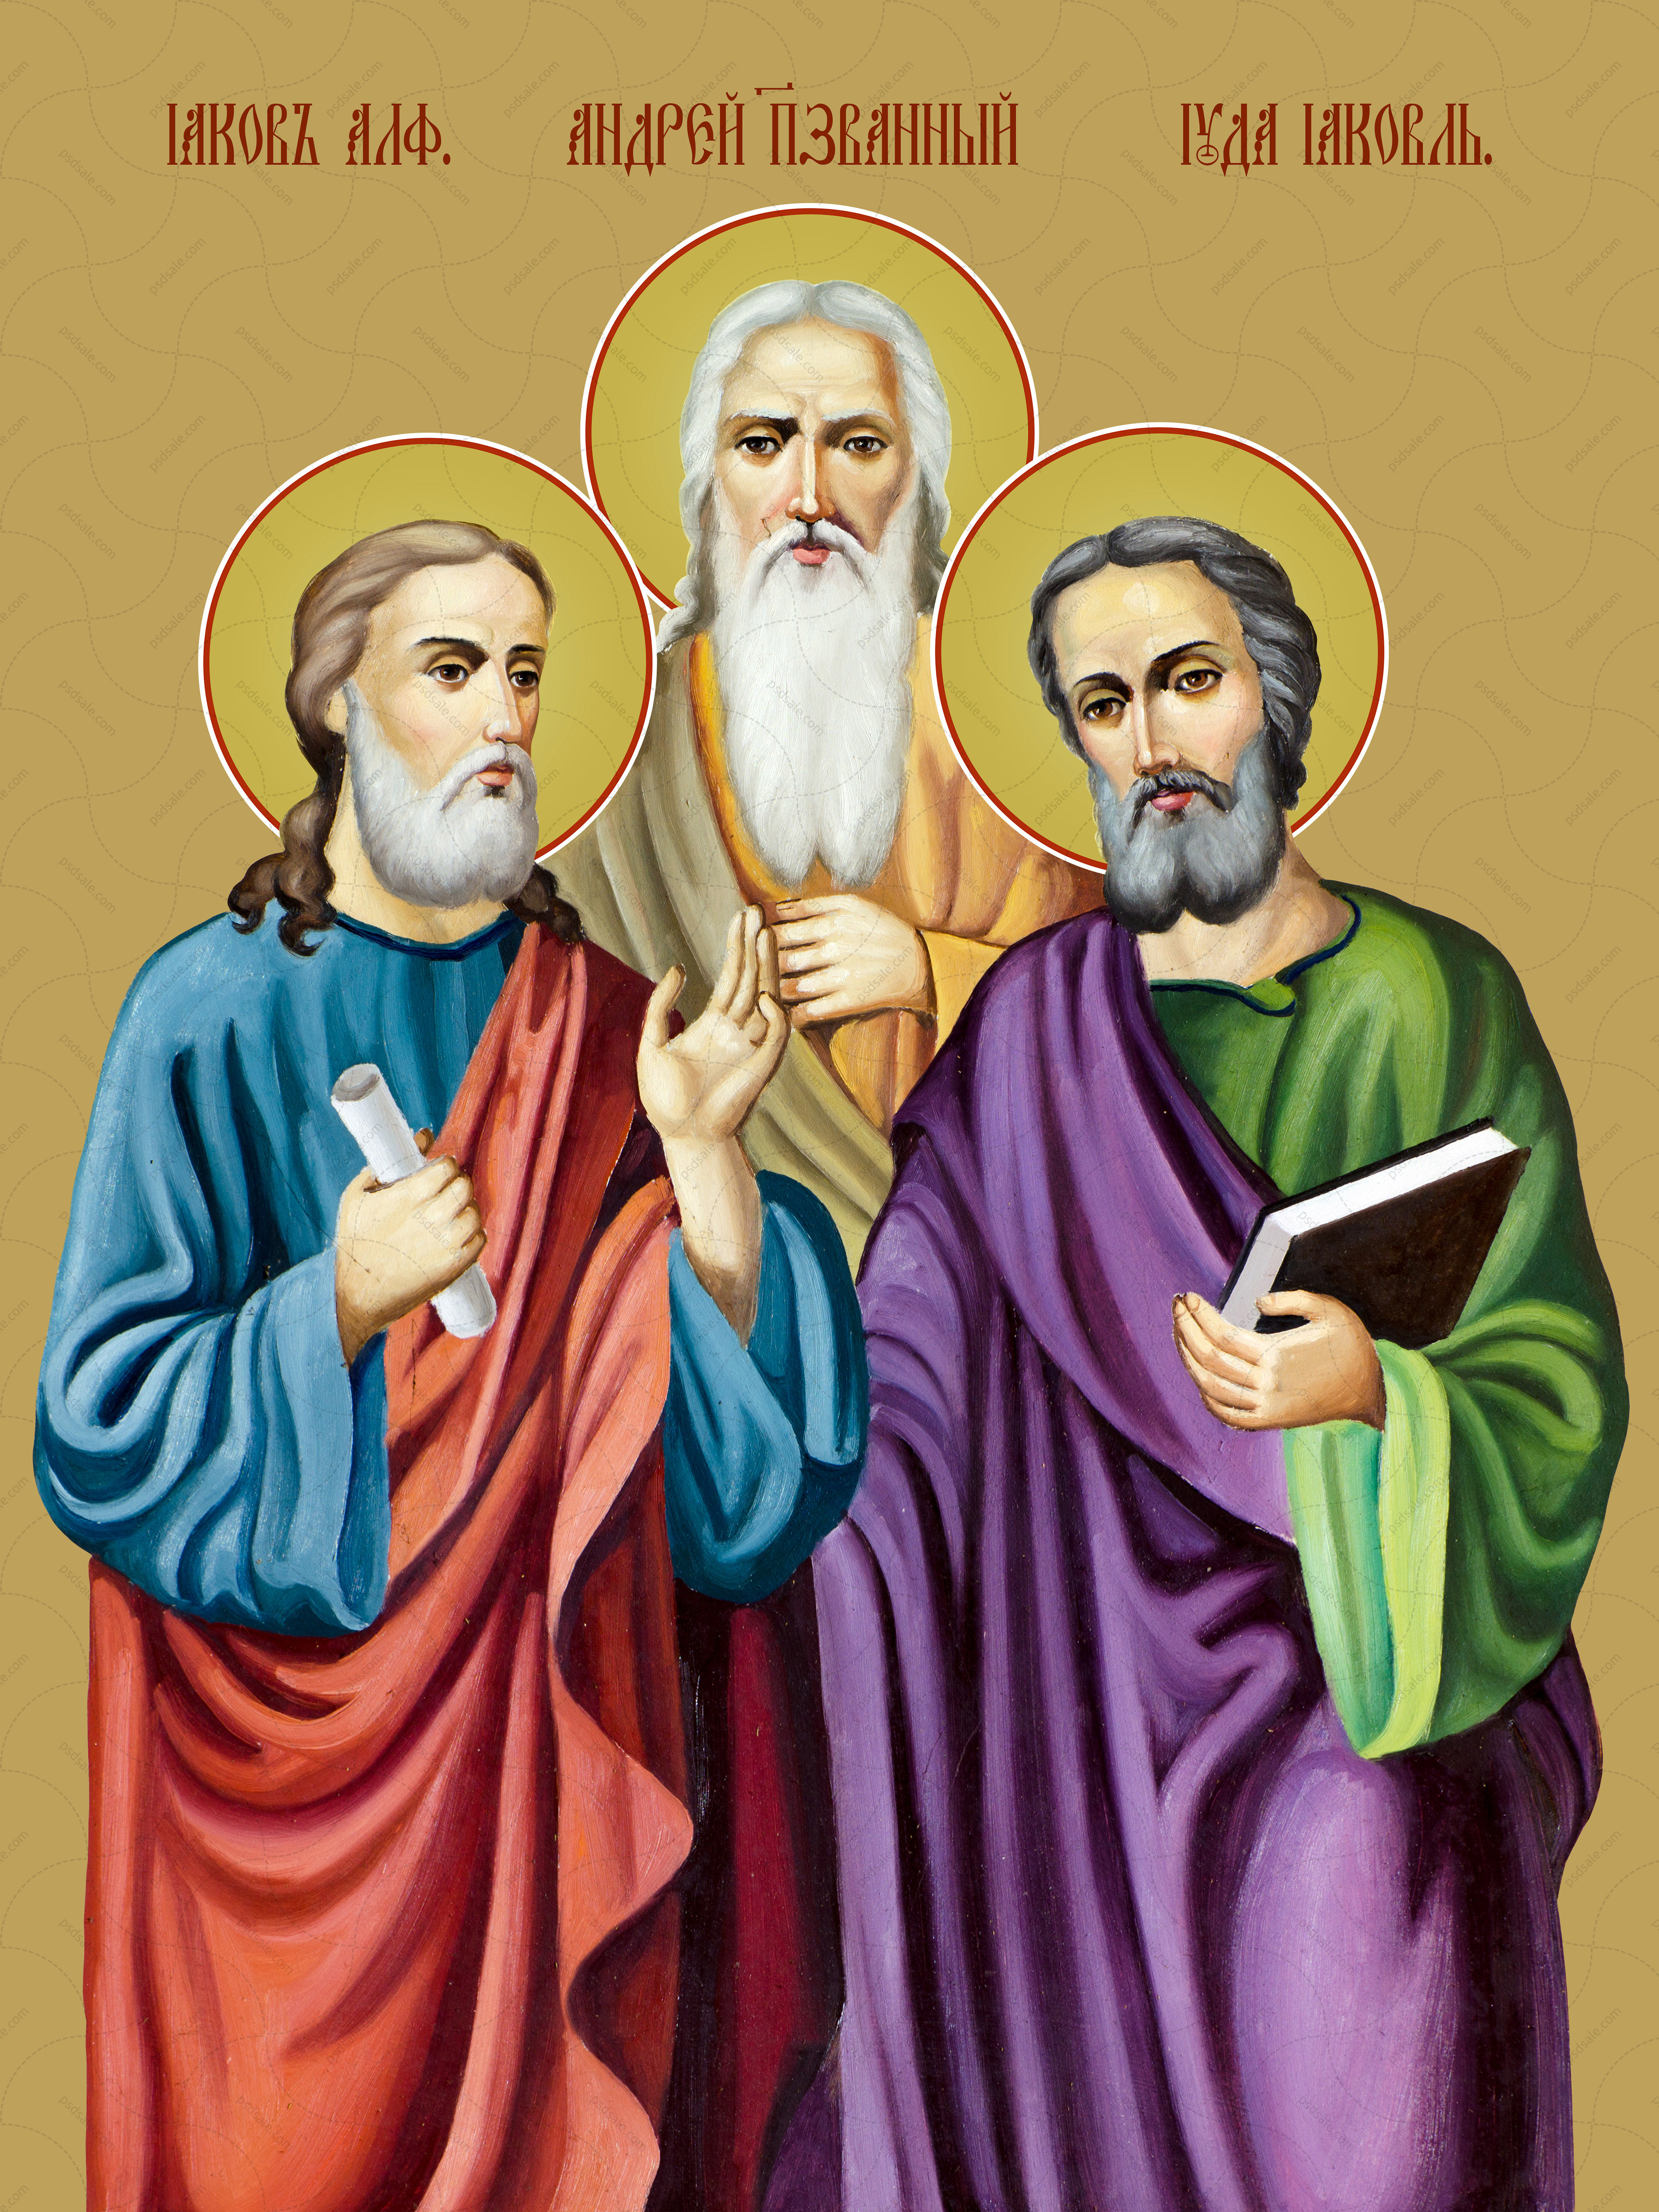 Holy apostles